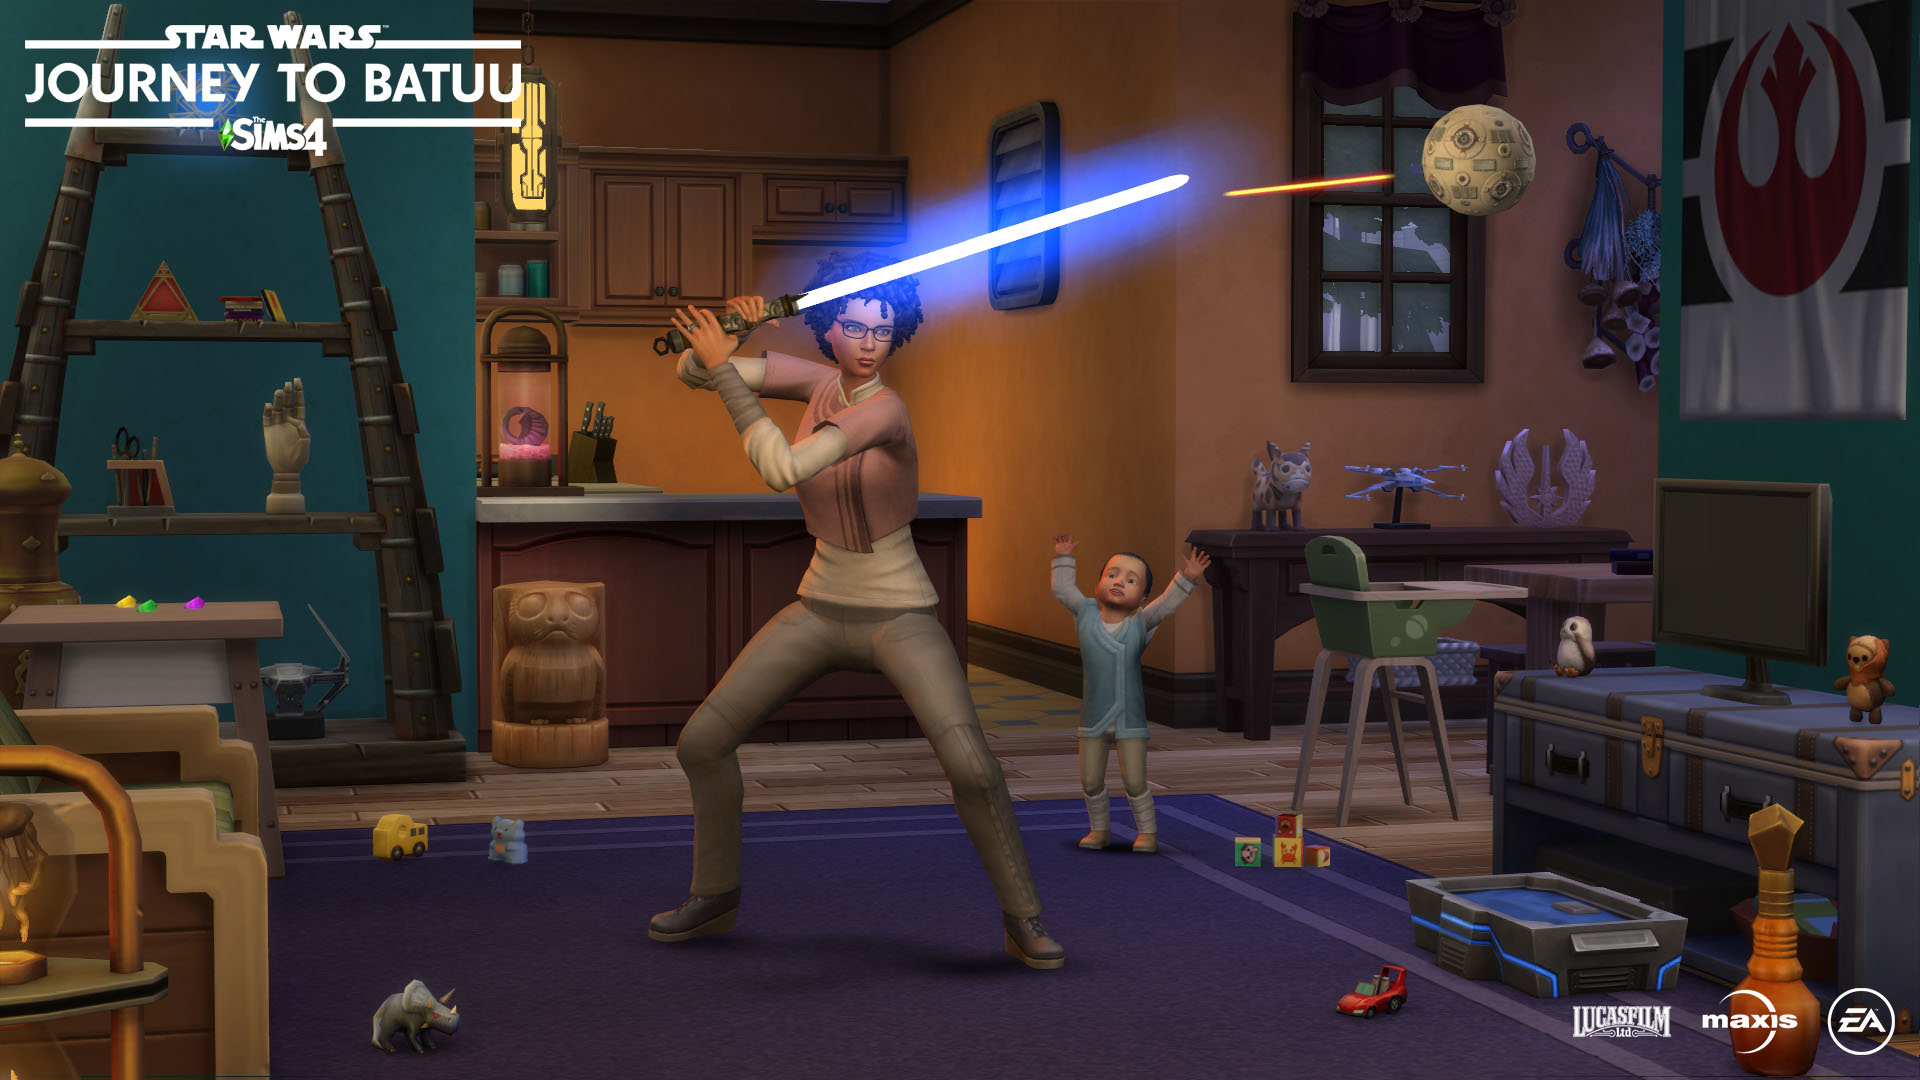 Los Sims 4 Star Wars